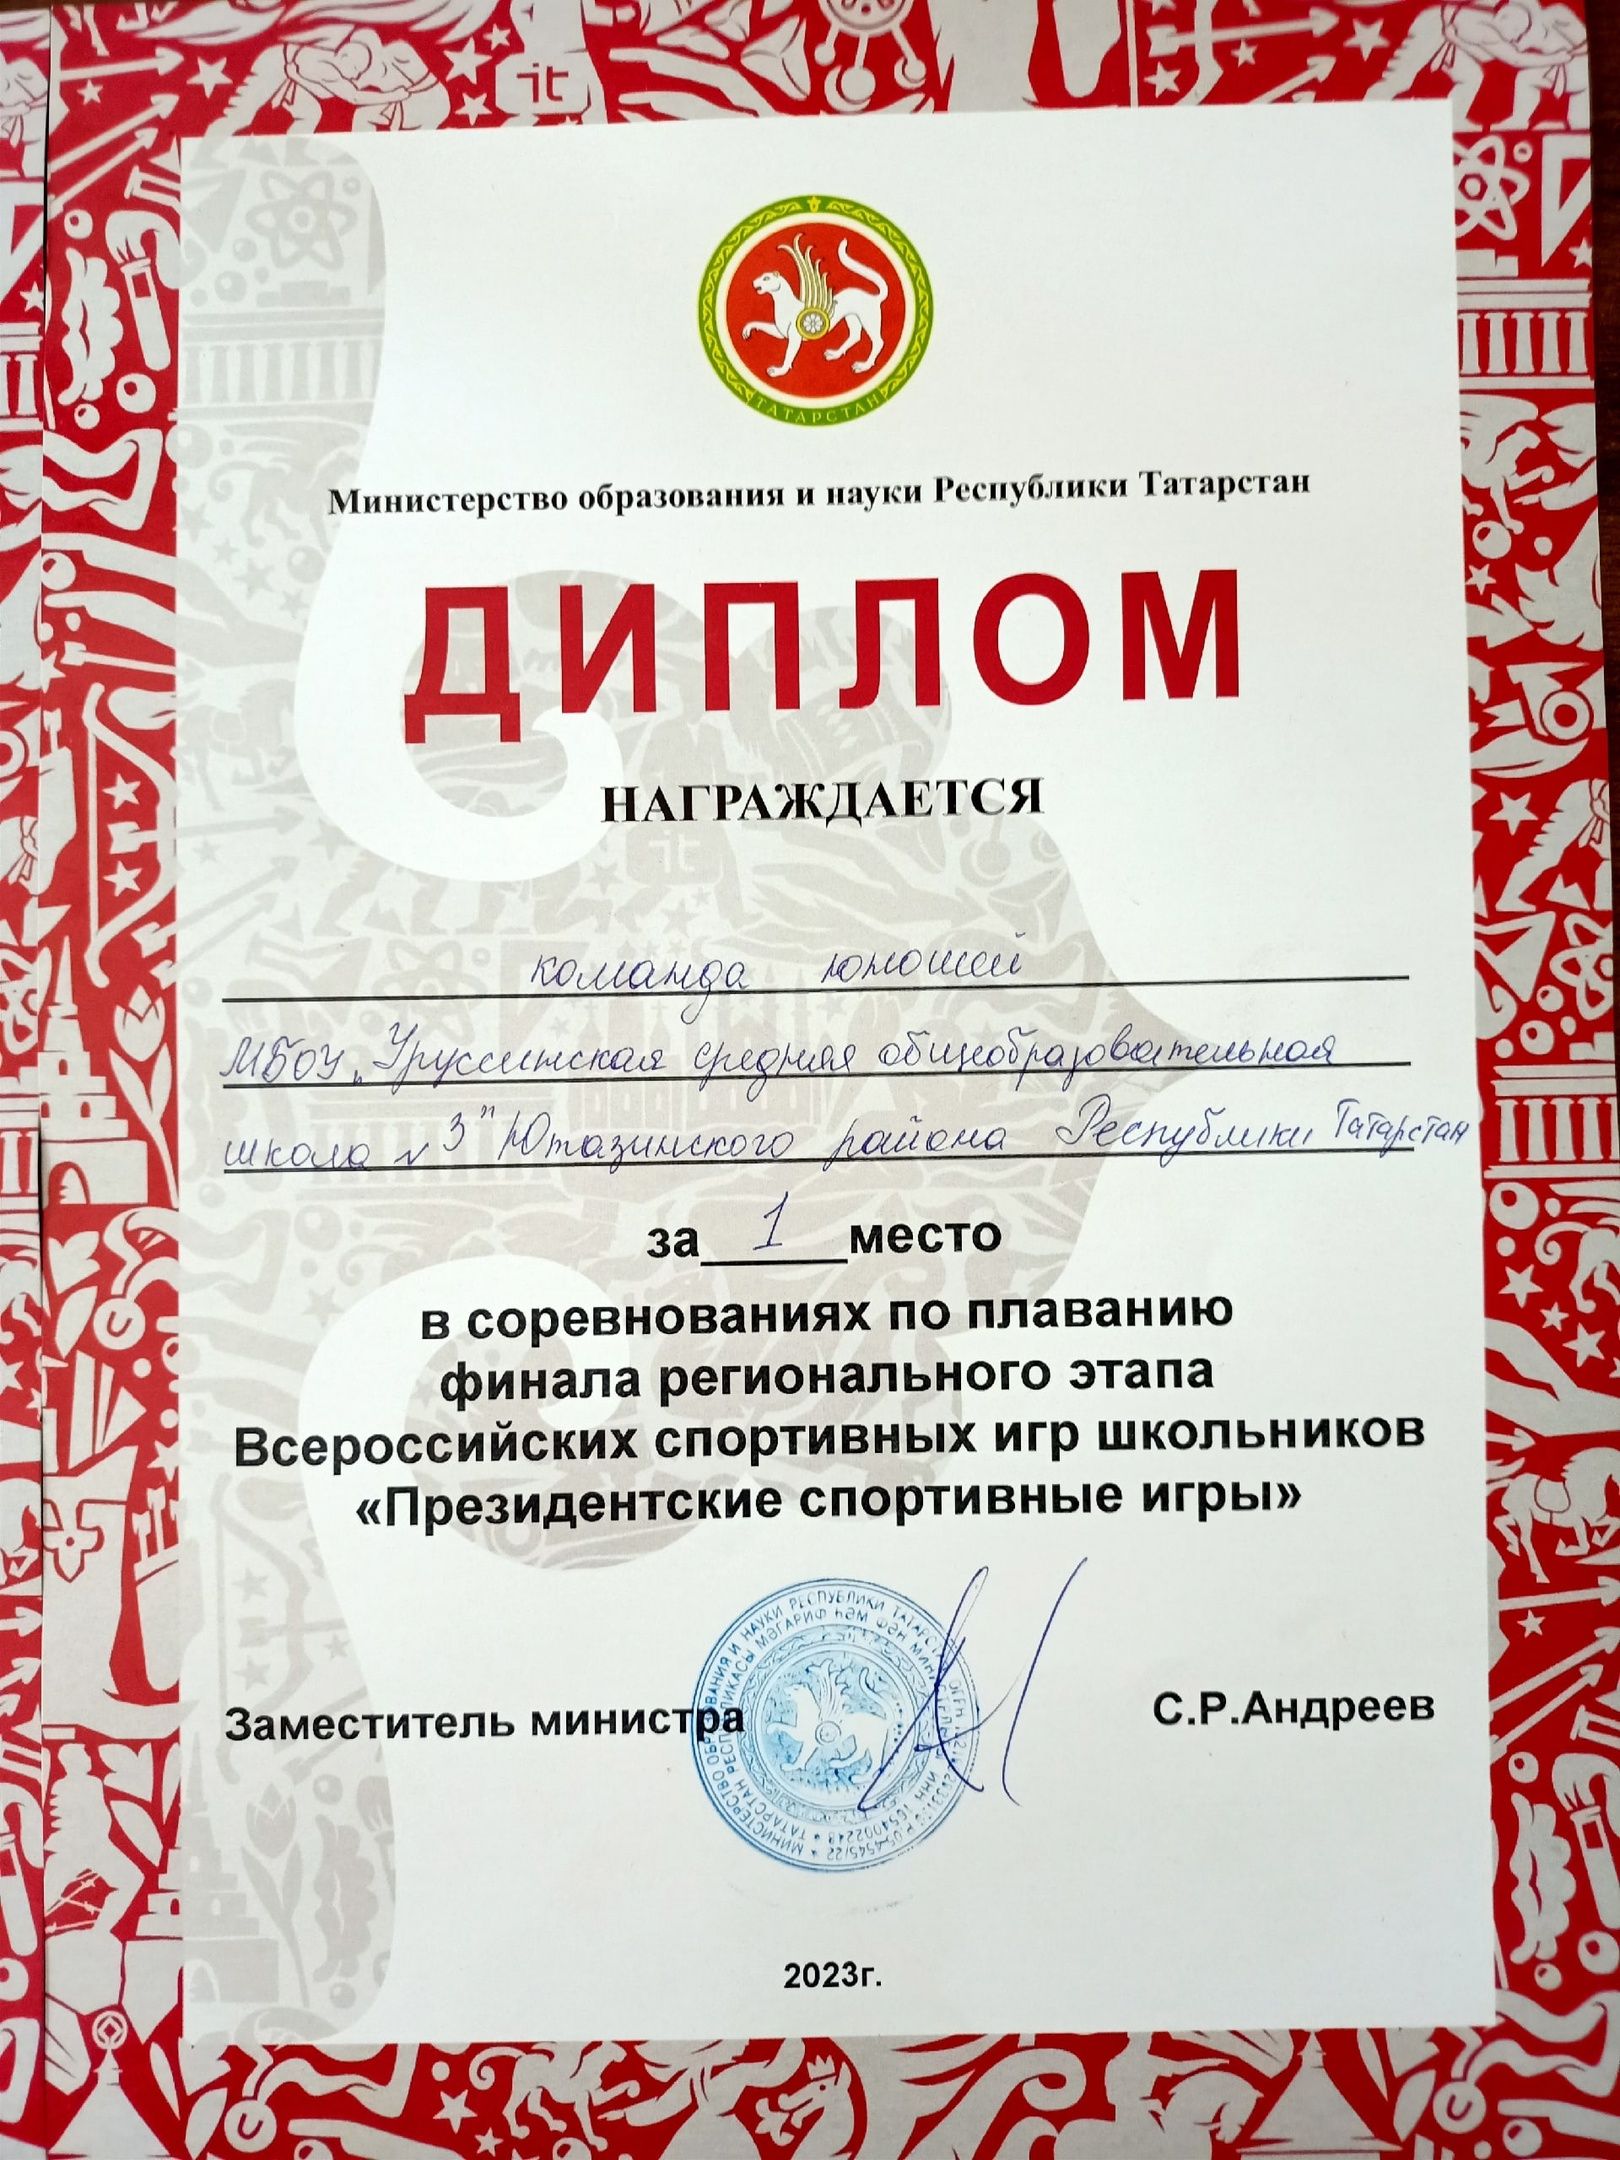 Уруссинские школьники поучаствовали в региональном этапе Всероссийских спортивных игр школьников